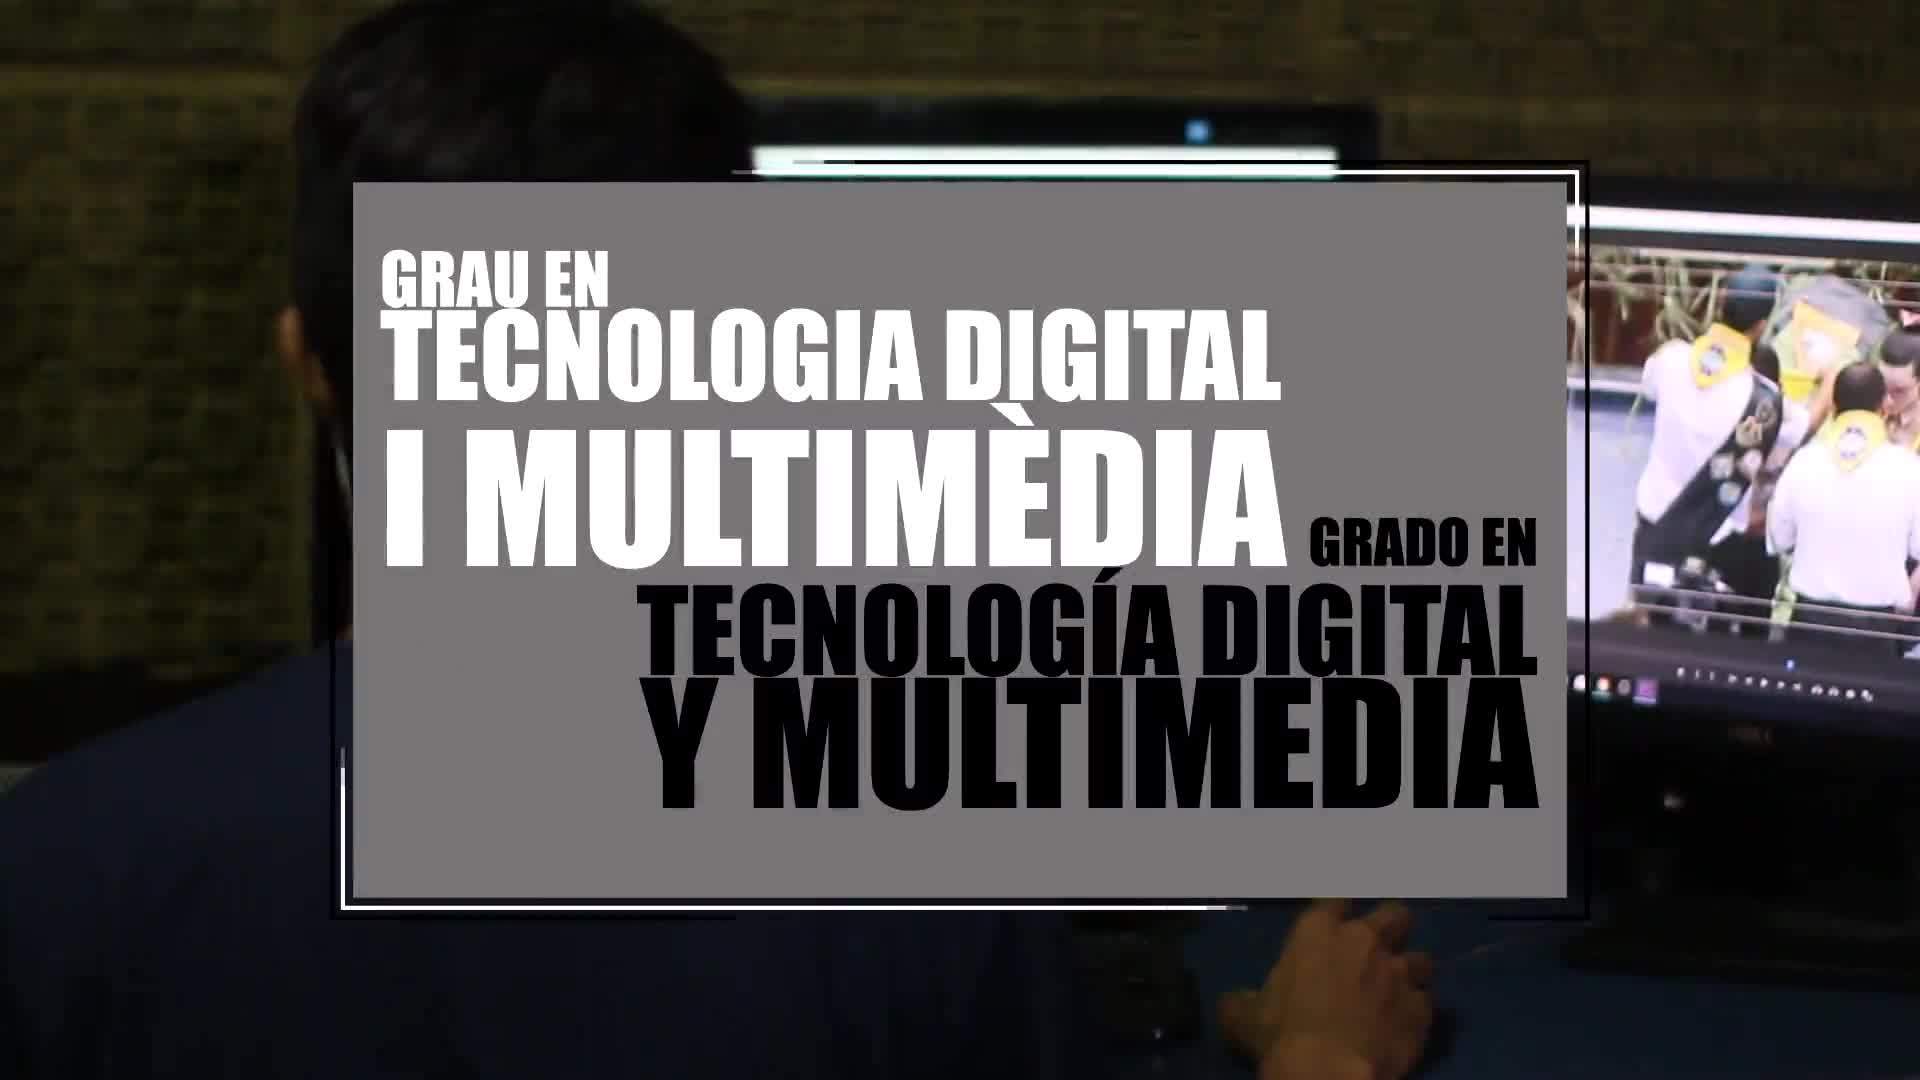 22-04-2020 Grado en Tecnología Digital y Multimedia